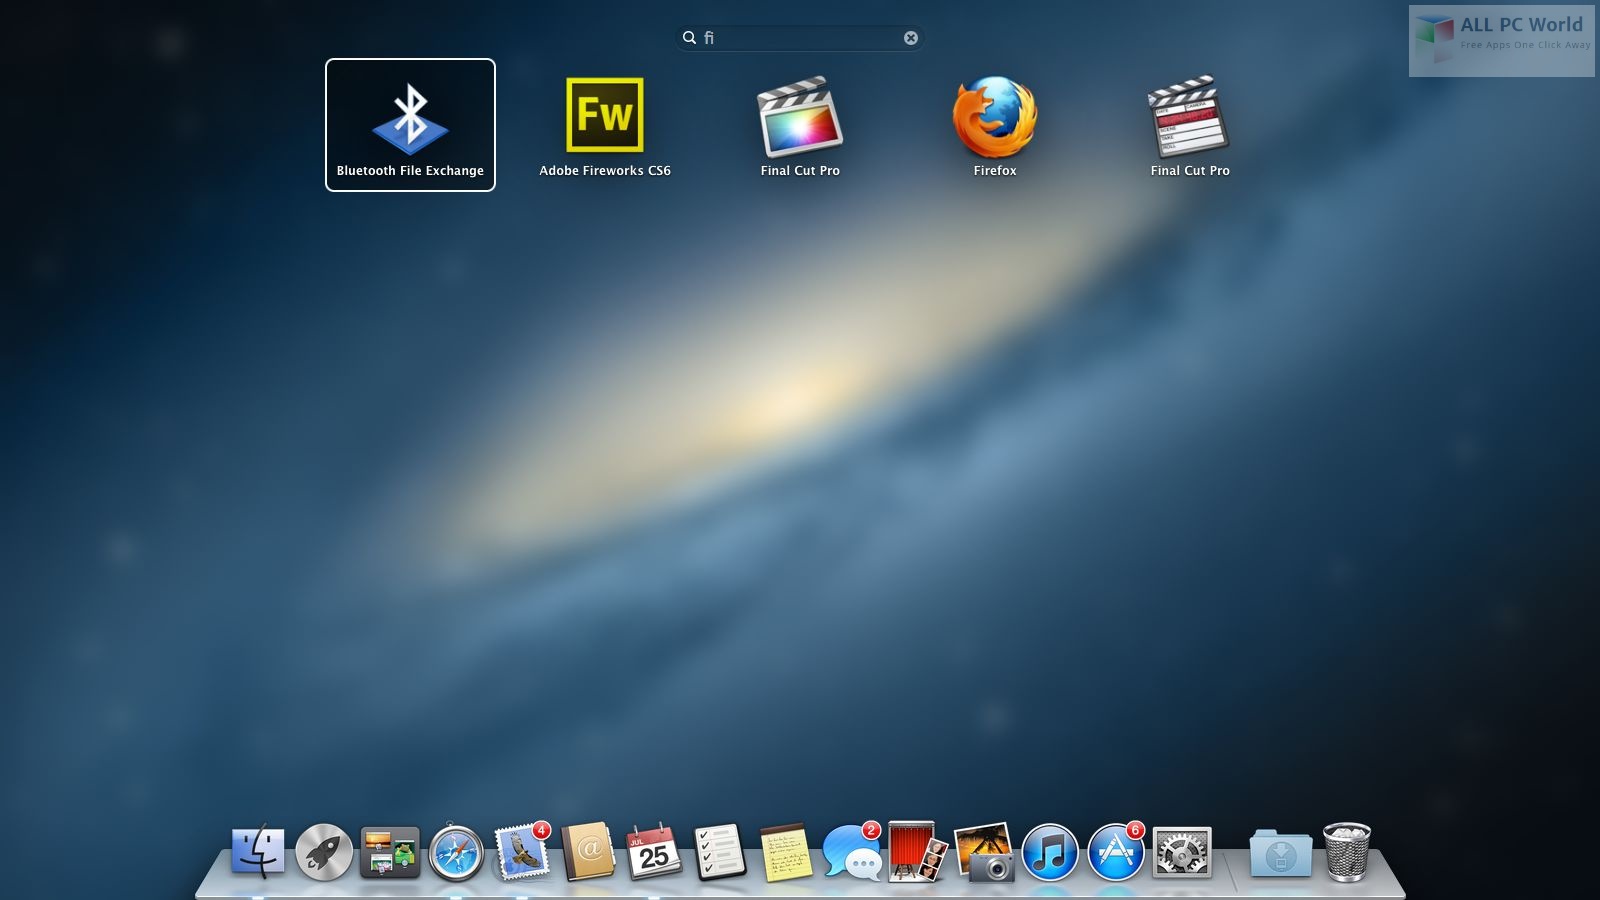 Mac OS X Mountain Lion 10.8.5